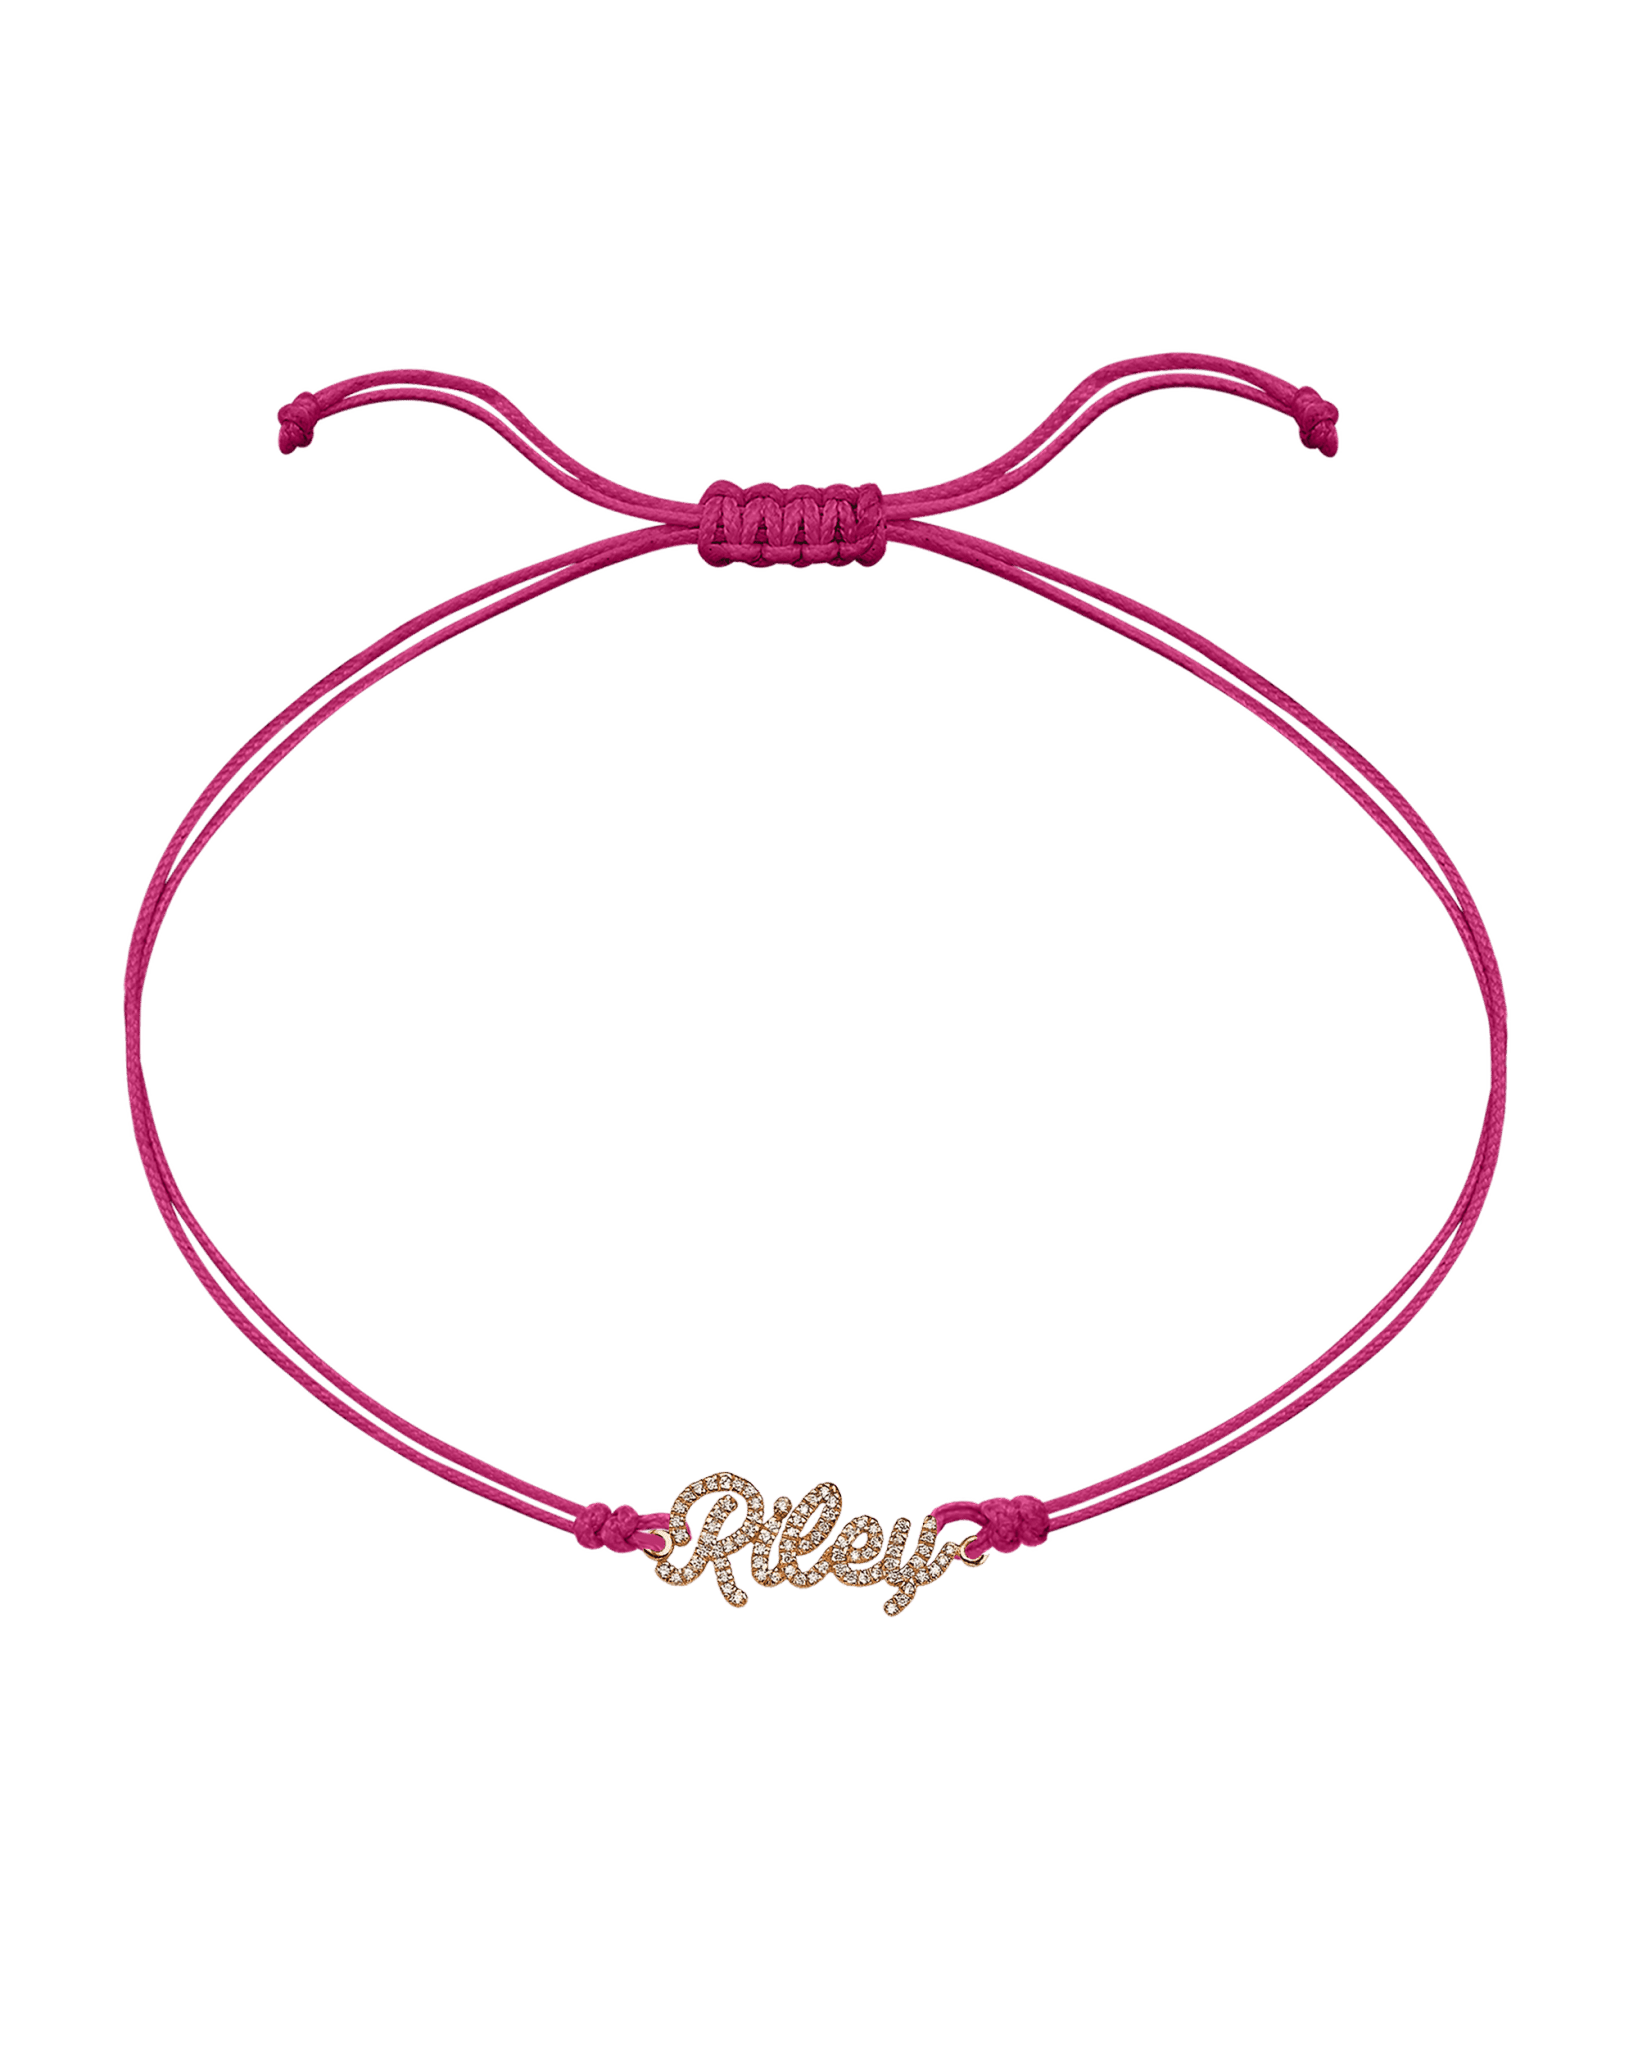 Paved Name Plate String of Love - 14K Rose Gold Bracelet 14K Solid Gold Pink 1 